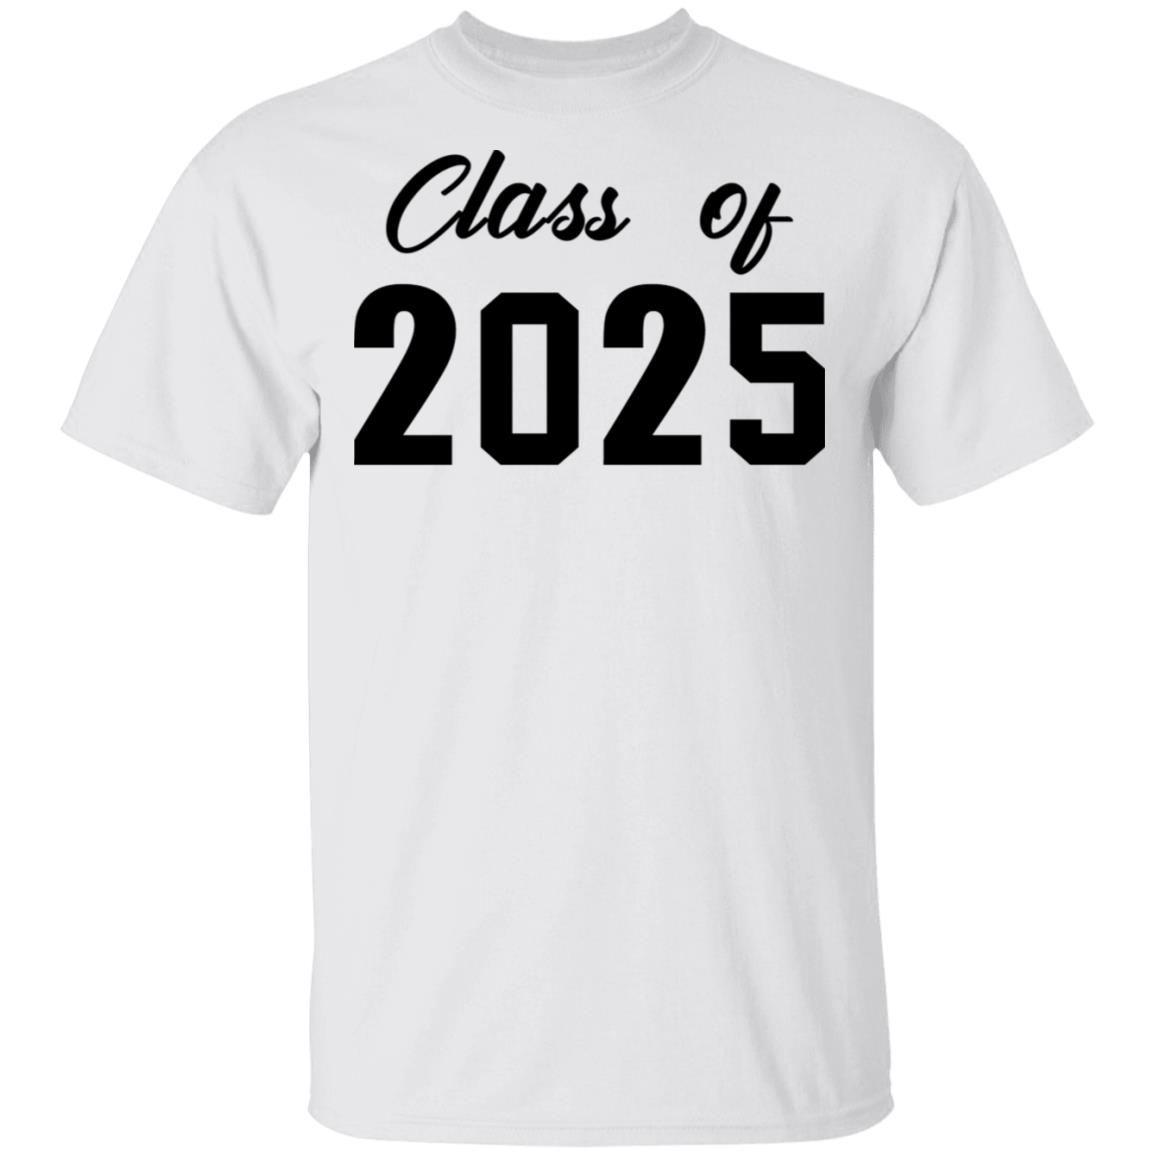 Class of 2025 shirt - Rockatee